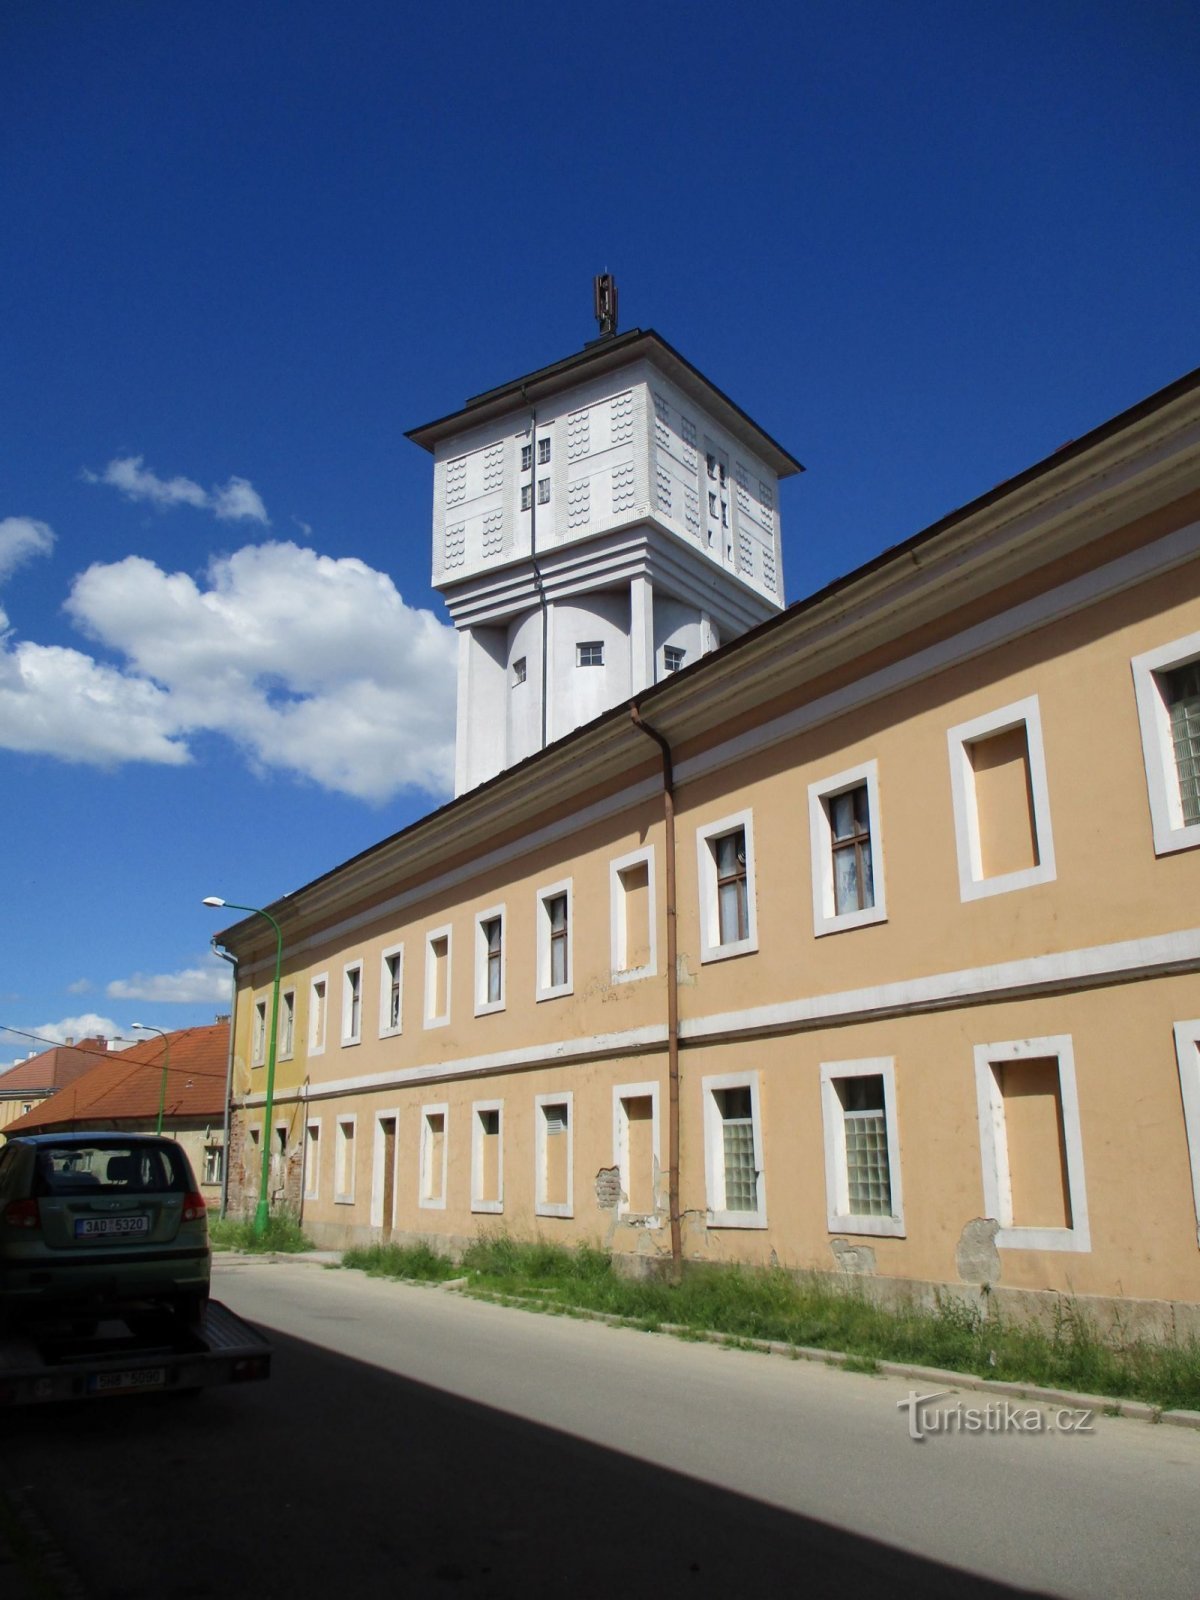 Torre dell'acqua presso l'ex birrificio (Josefov, 1,6,2020 giugno XNUMX)